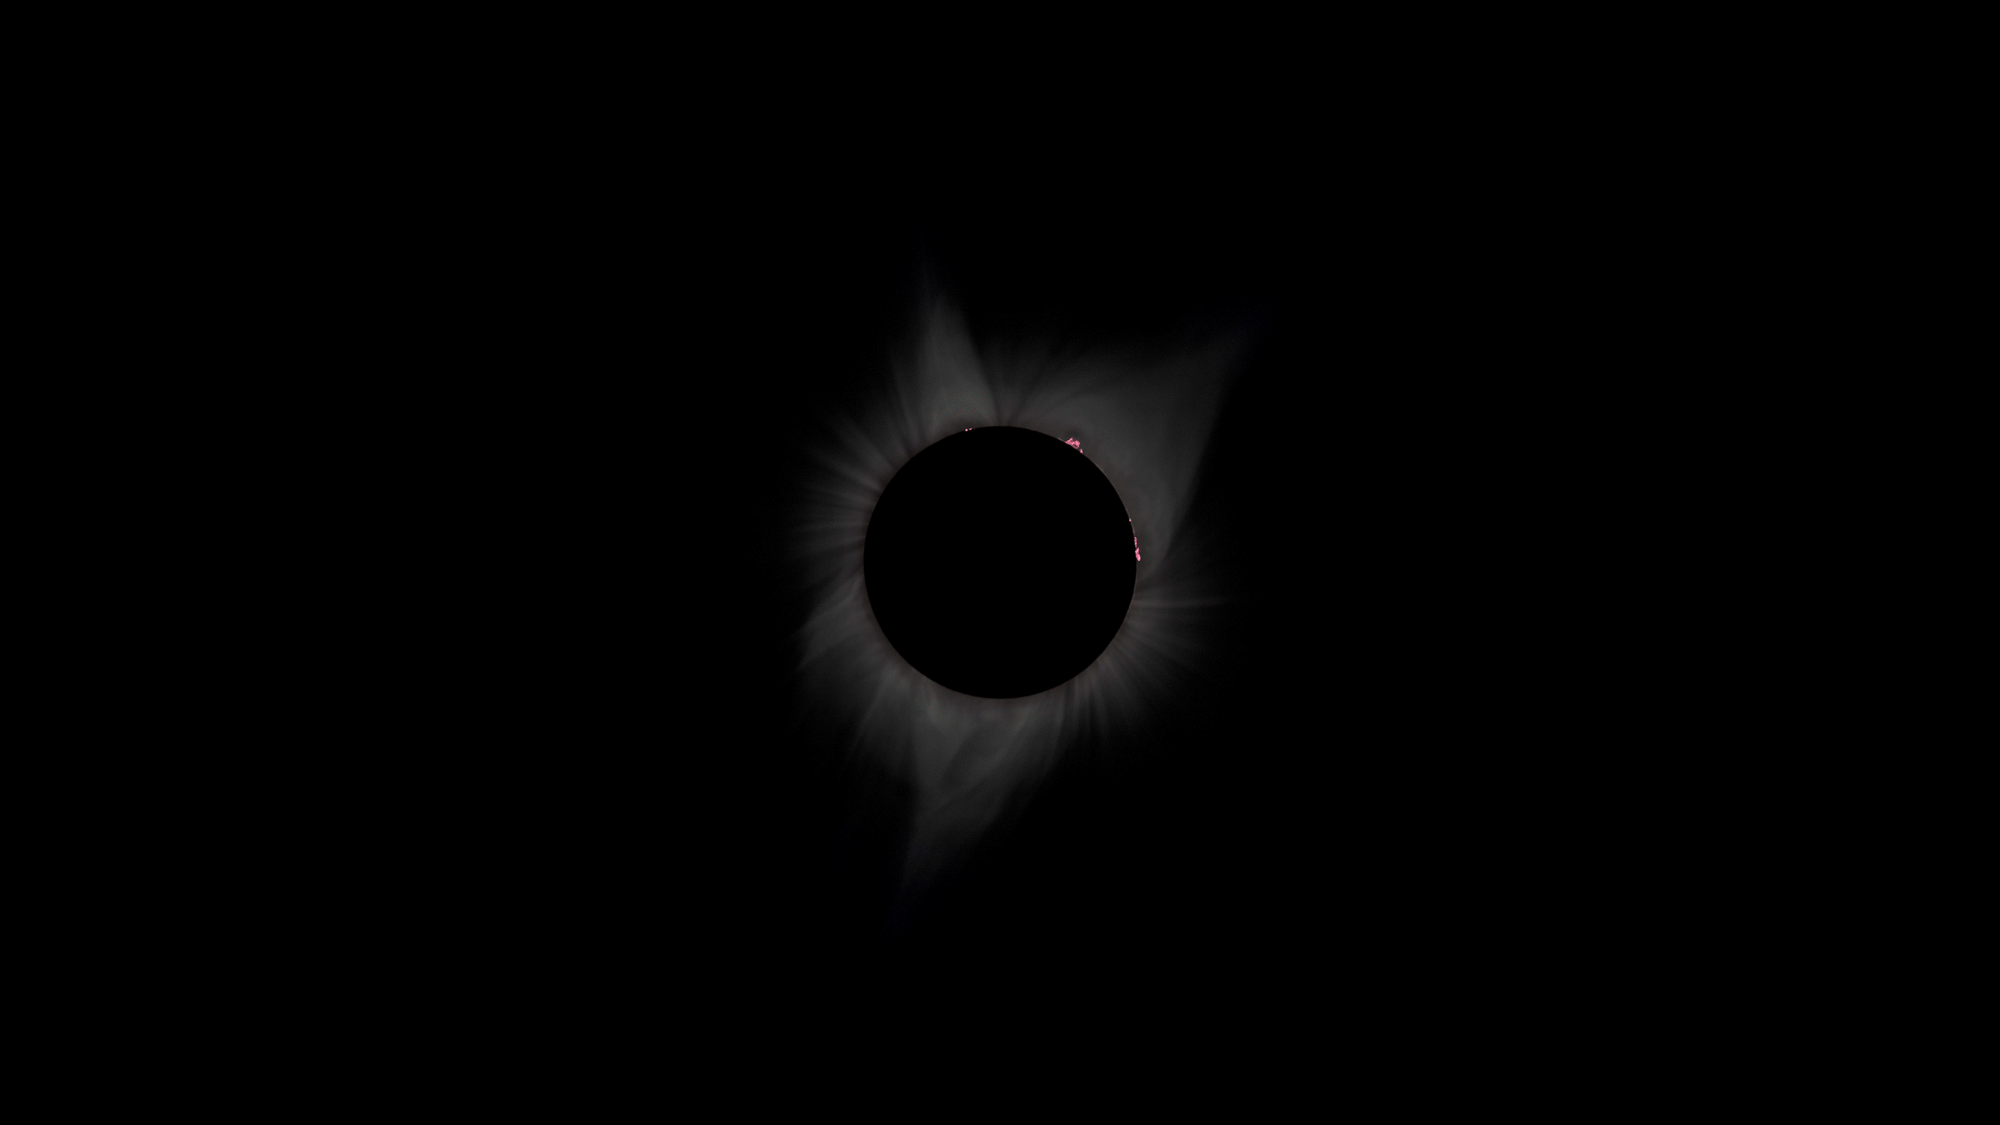 meng-he-brewgorithm-eclipse